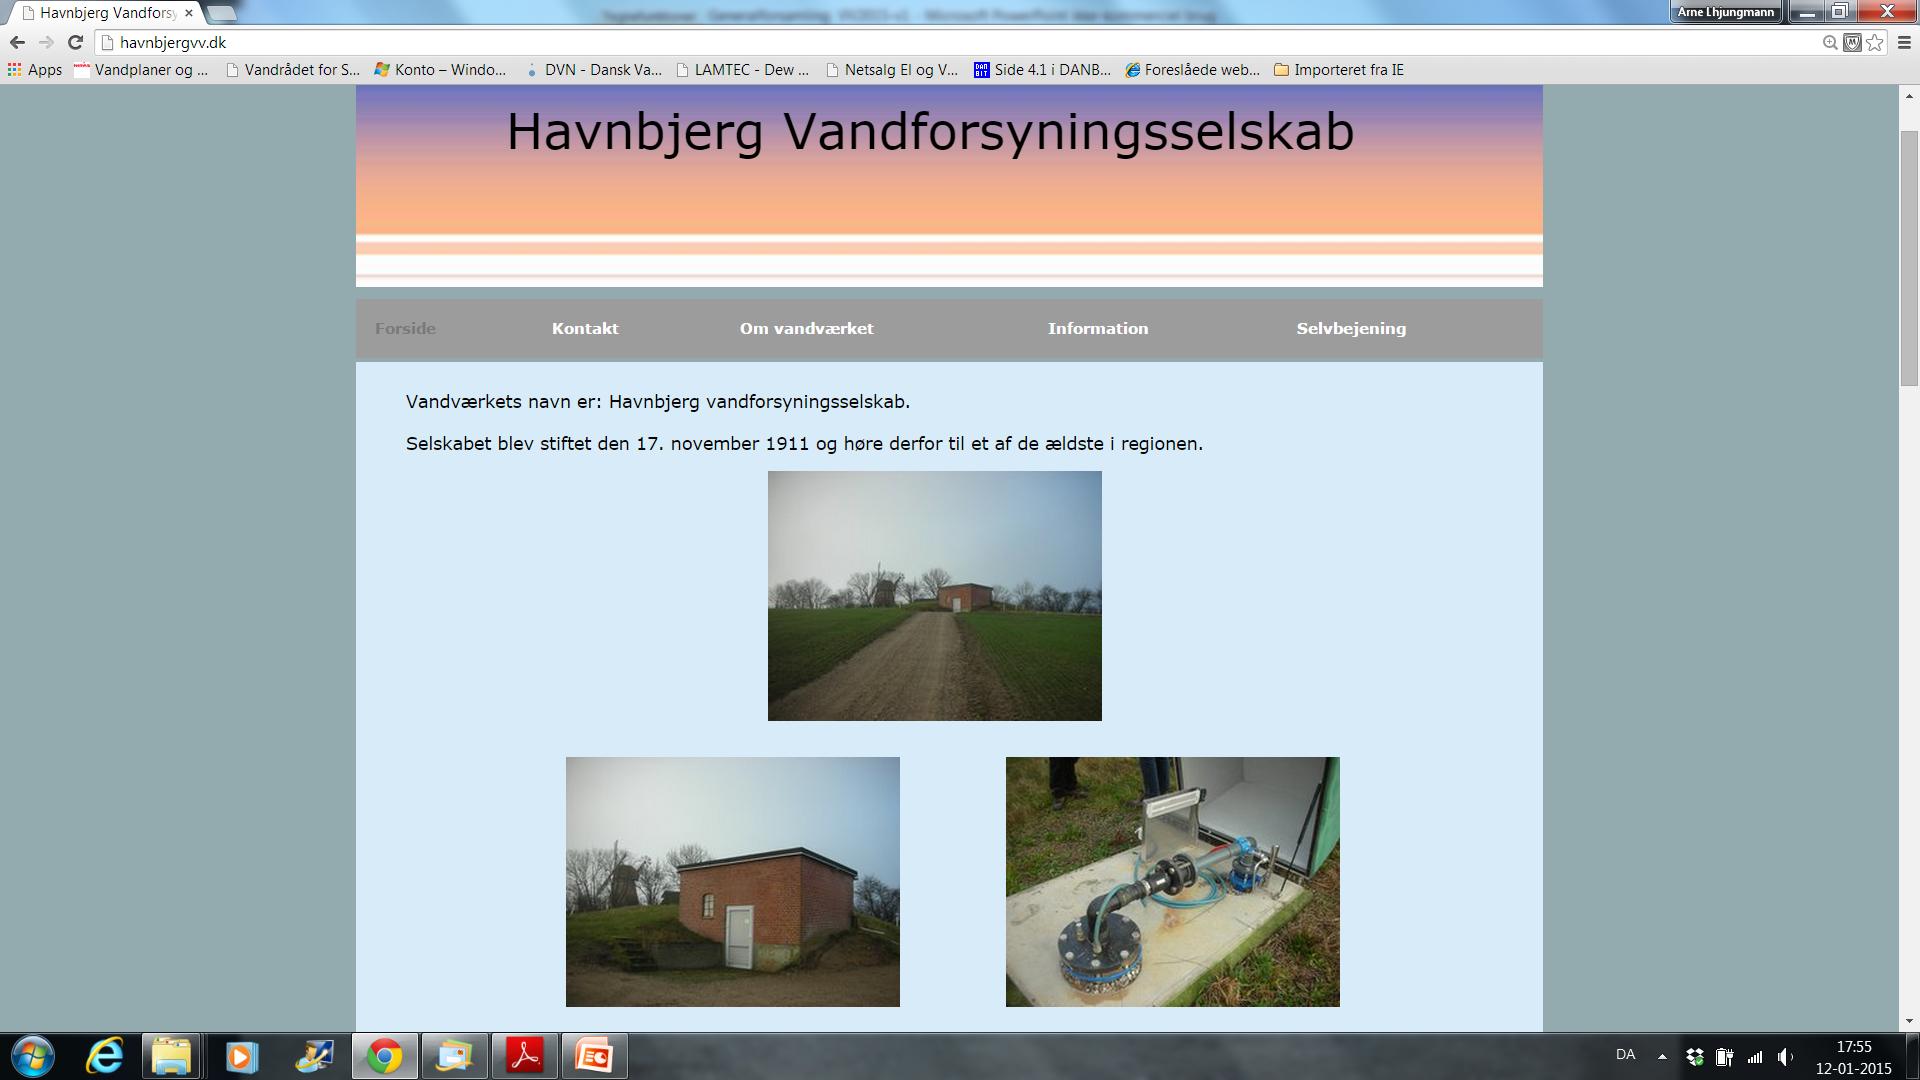 Hjemmeside Kommunen har fremsat krav om at alle almene vandværker i kommunen